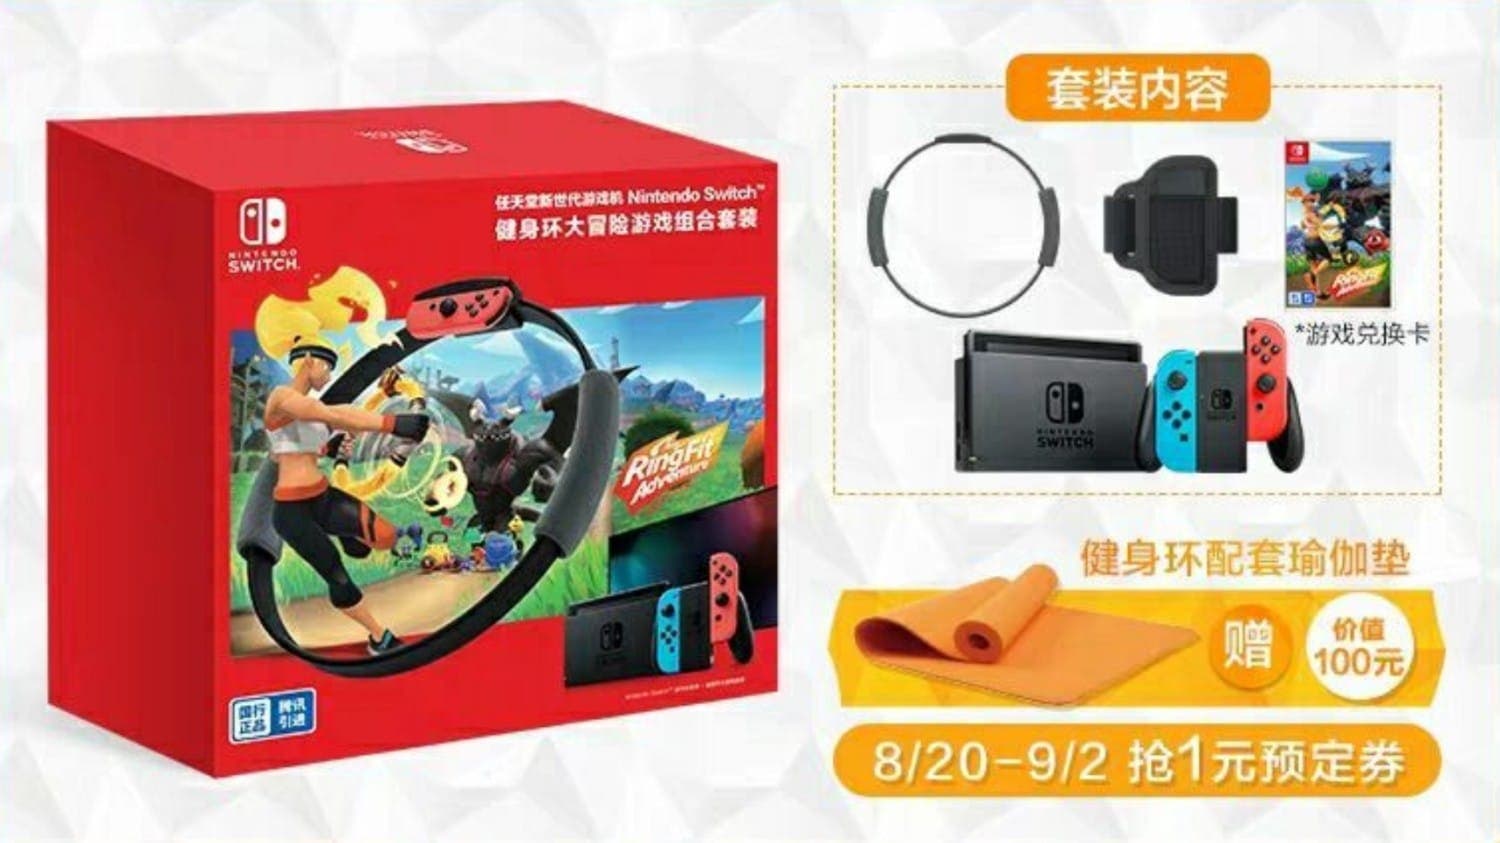 Anunciado un pack de Nintendo Switch + Ring Fit Adventure para China: fecha, imágenes y más